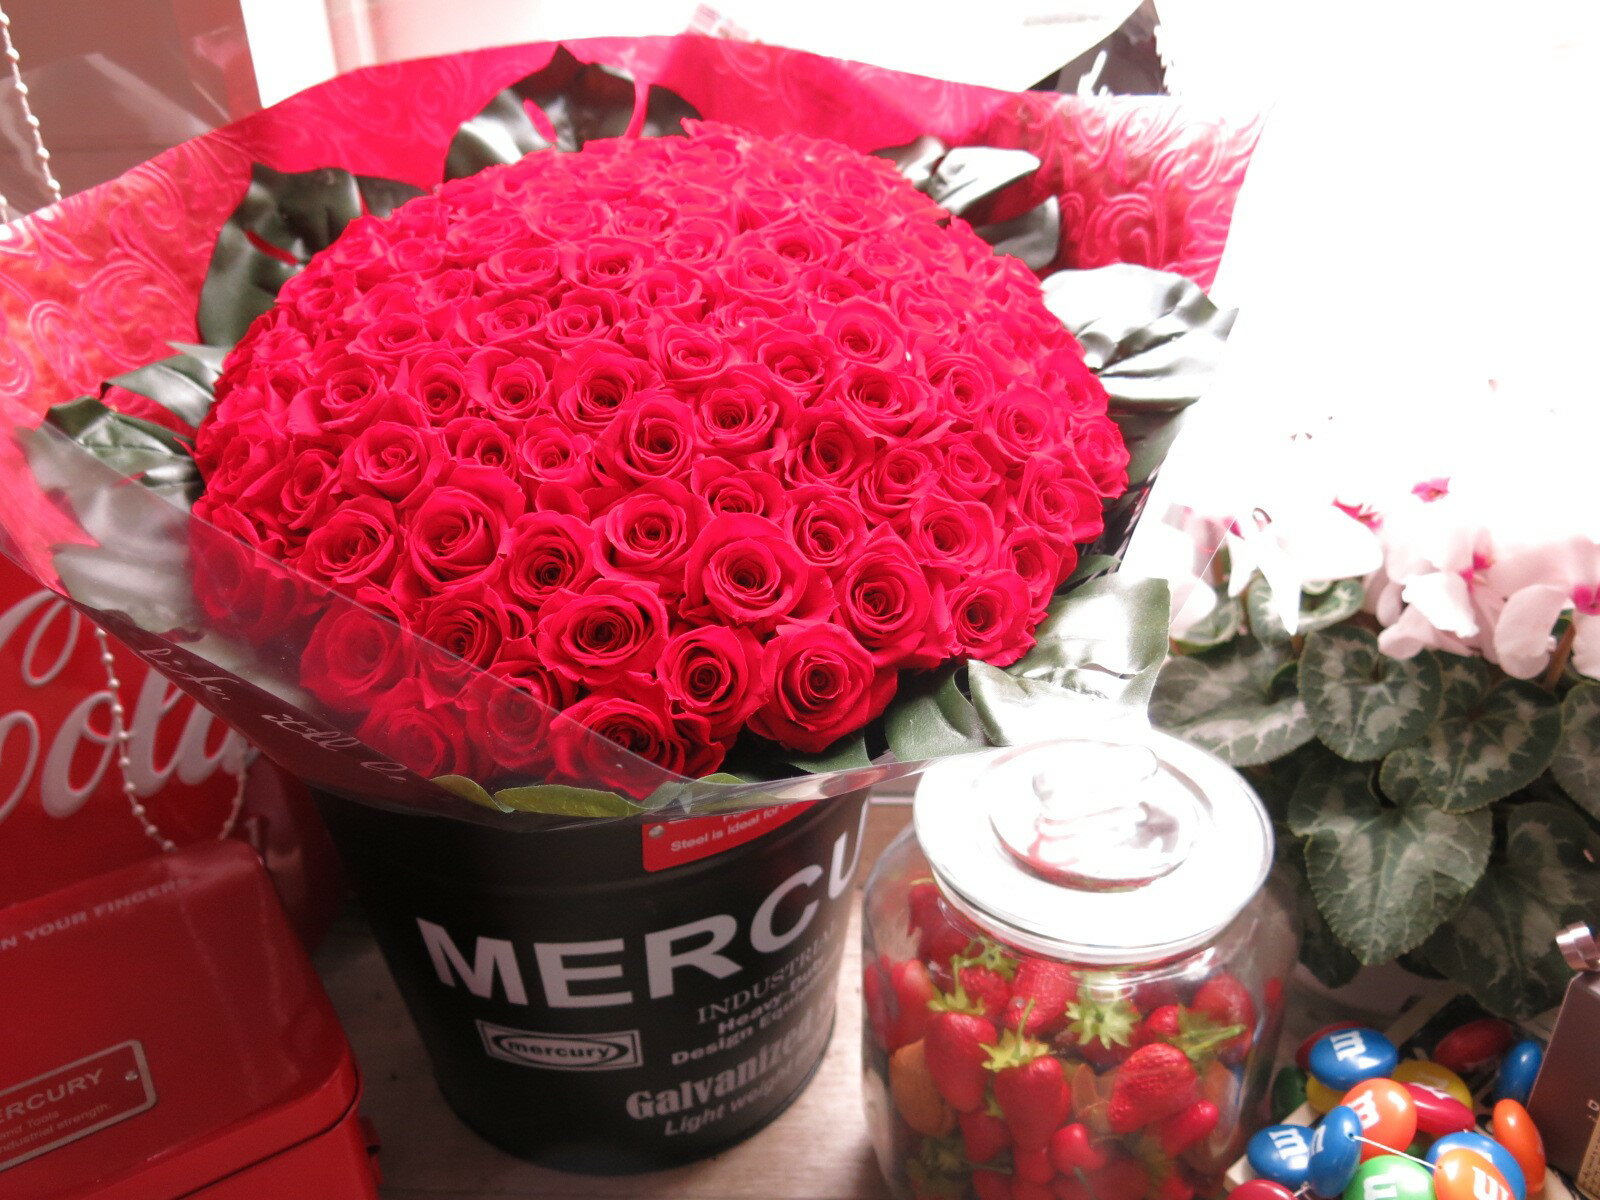 赤バラ 101本 プリザーブドフラワー 赤バラ 花束 赤バラ101本使用 プリザーブドフラワー 花束 枯れずにいつまでもキレイな赤バラ ブリキバケツ付き◆誕生日プレゼント・成人祝い・記念日の贈り物におすすめのフラワーギフト 3